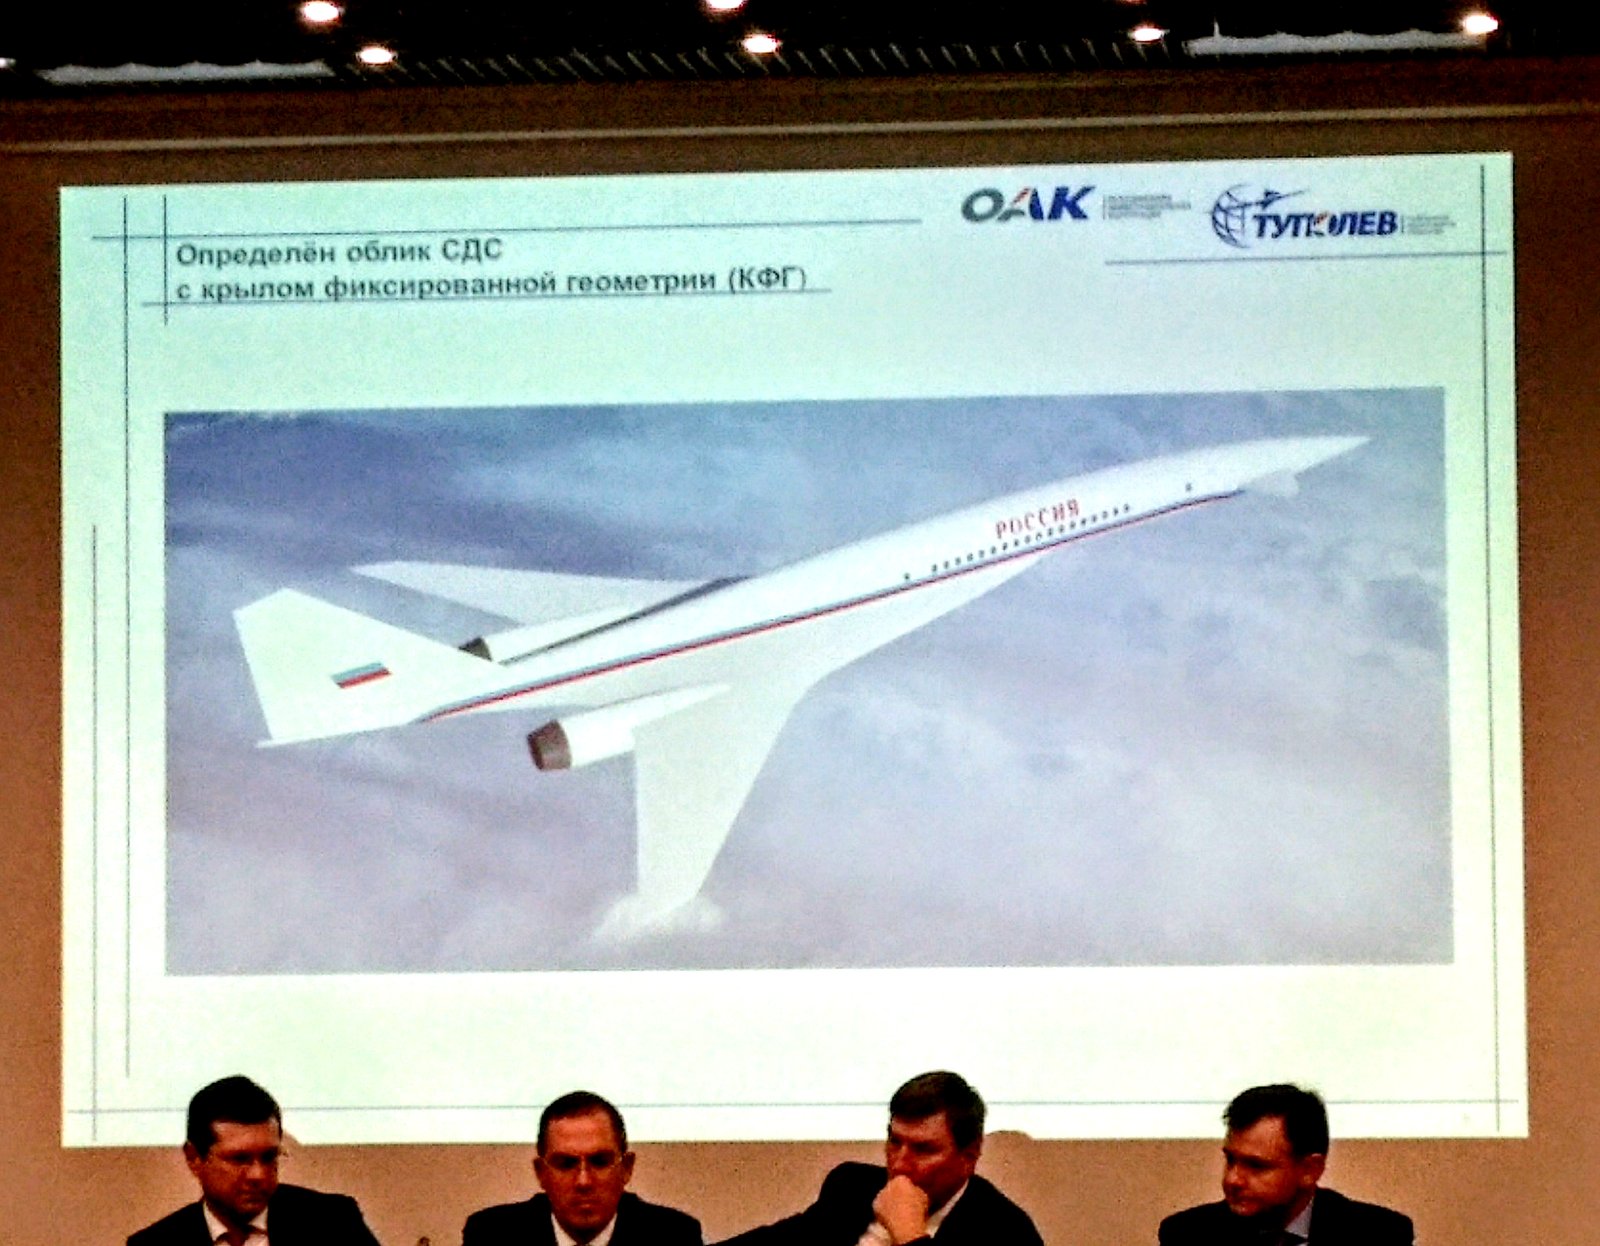 Перезагрузка авиастроения: что даст России новый сверхзвуковой самолет